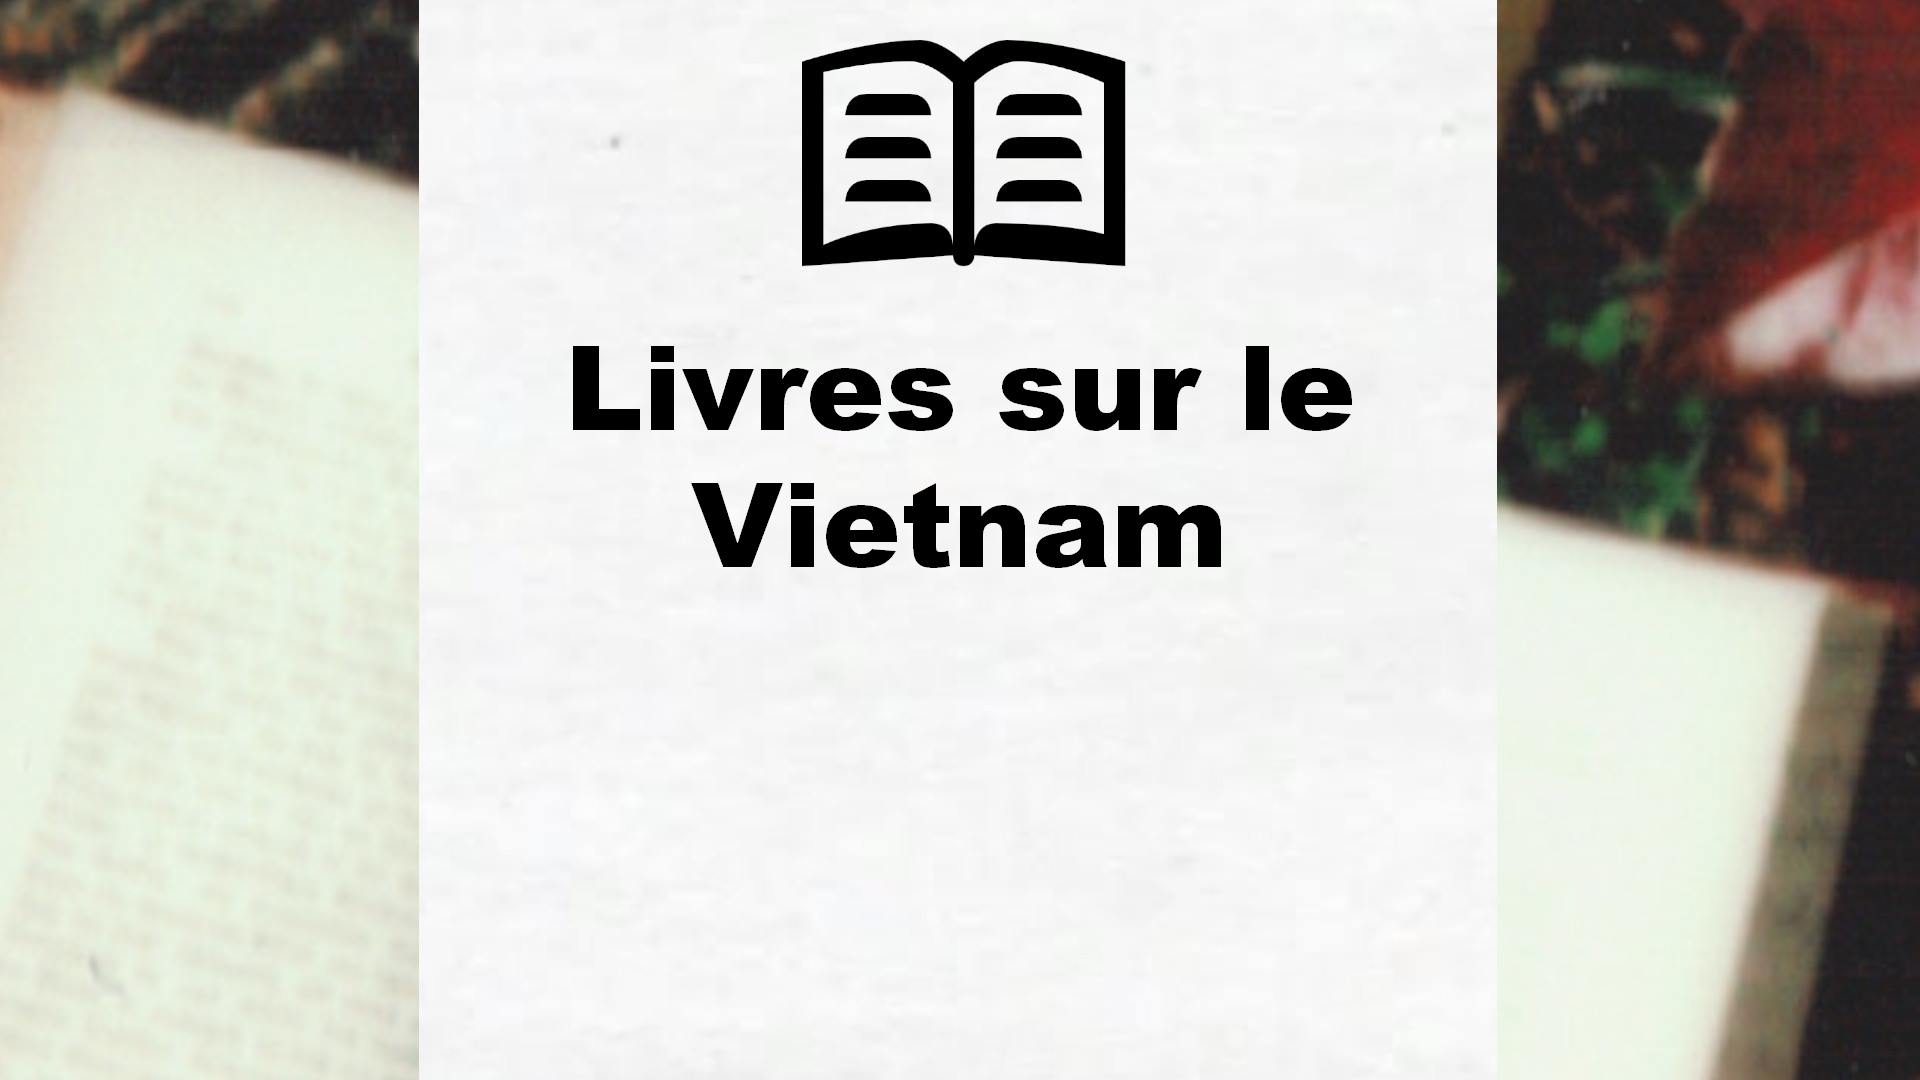 Livres sur le Vietnam